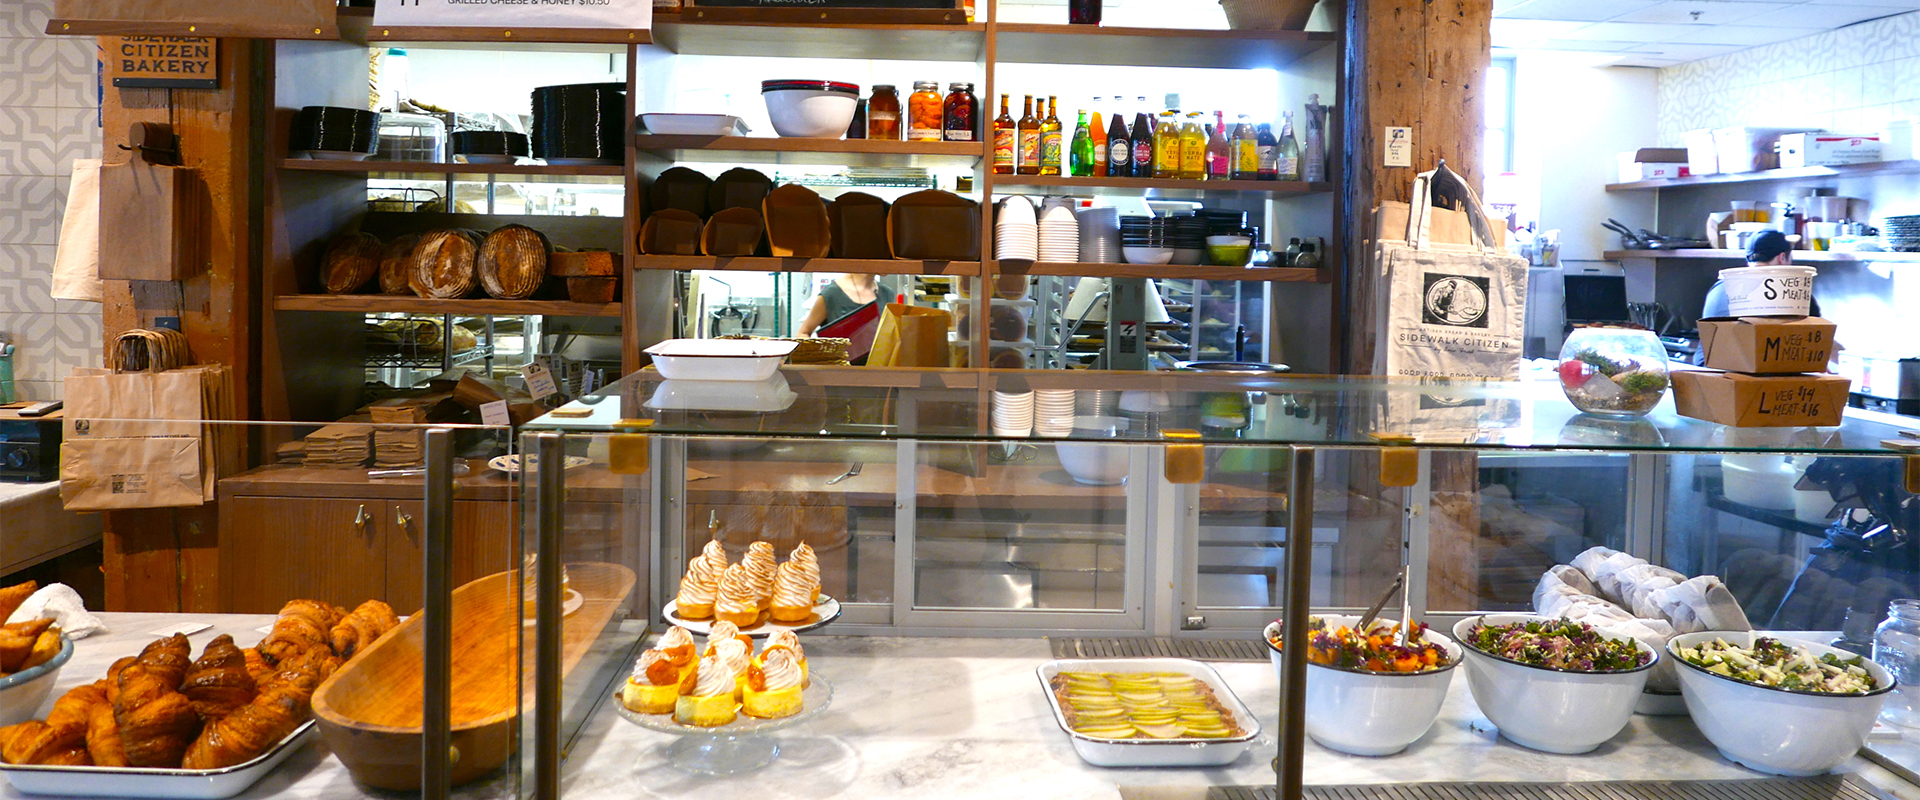 Sanduíches, pães, doces e saladas à espera do cliente, no Phil & Sebastian café (Fotos: Claudia Tonaco)